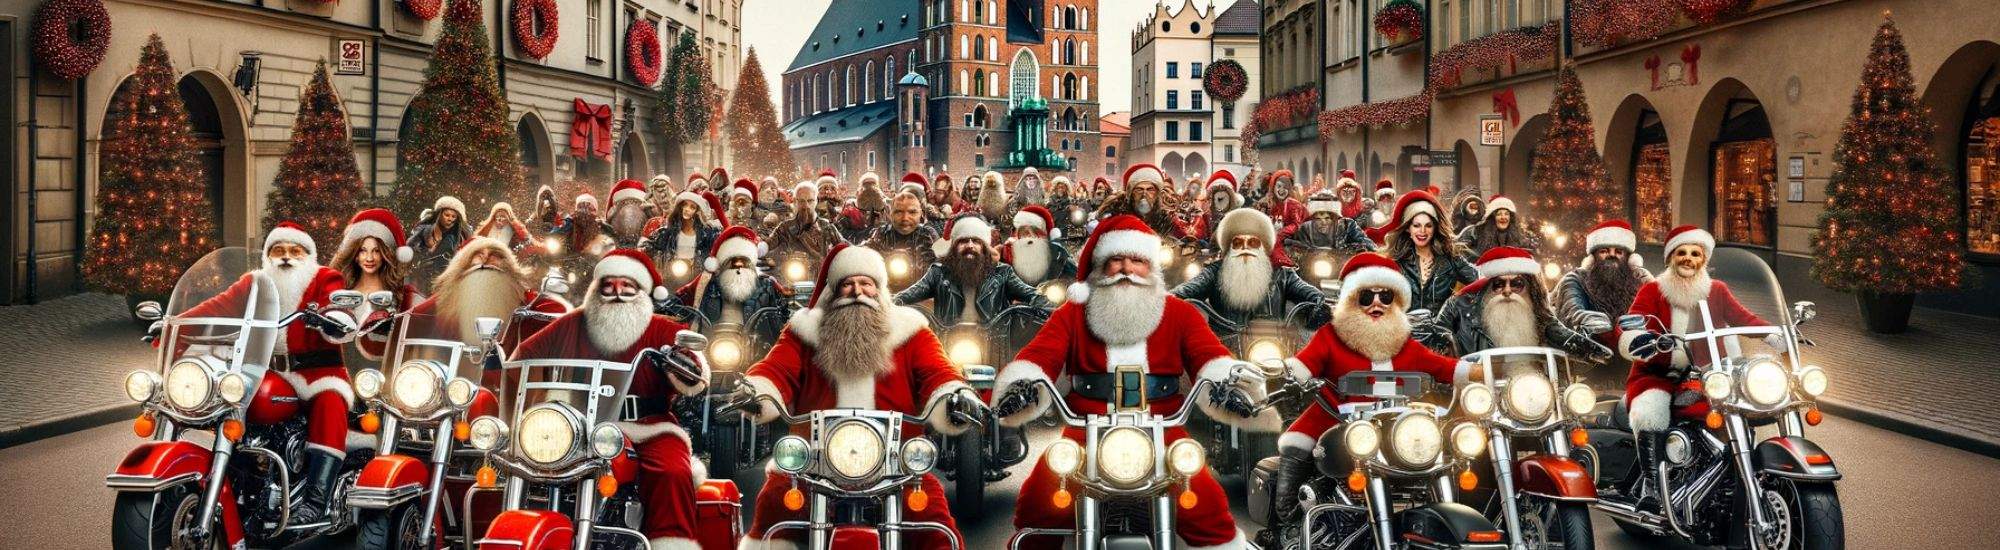 MotoWeihnachtsmänner in Krakau: Freudige Tradition mit einem Edlen Zweck